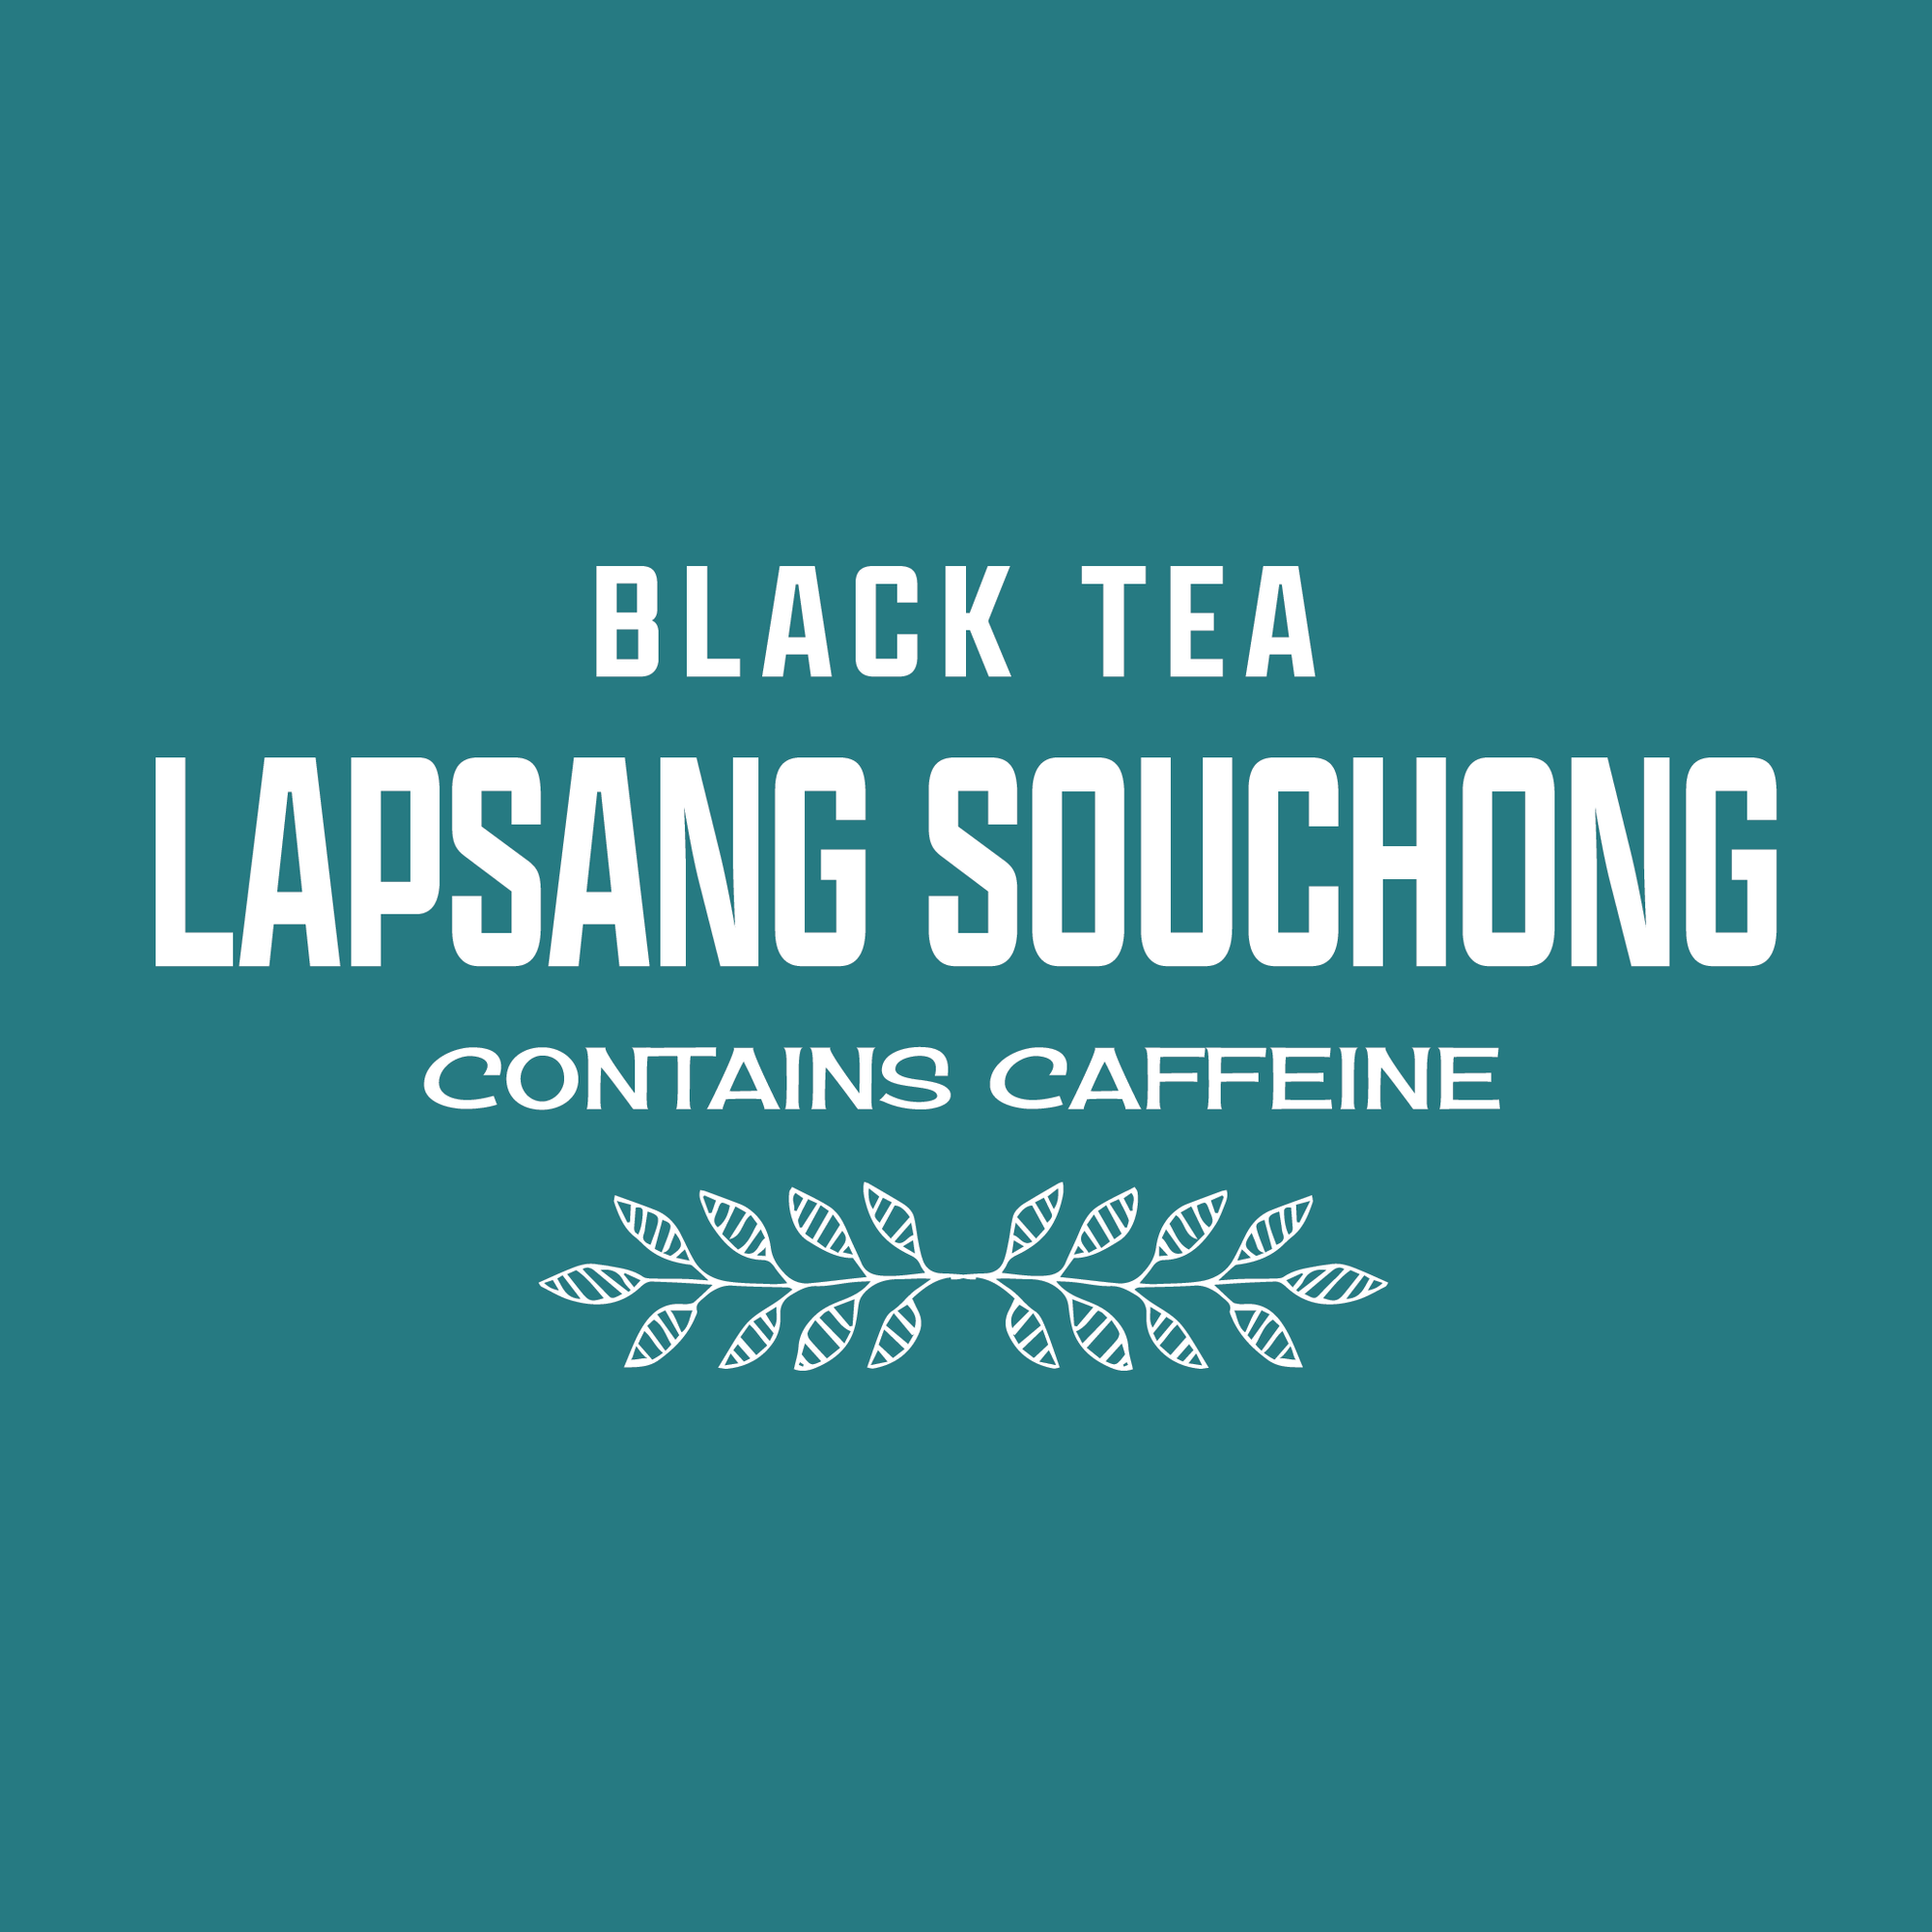 Lapsang Souchong Tea